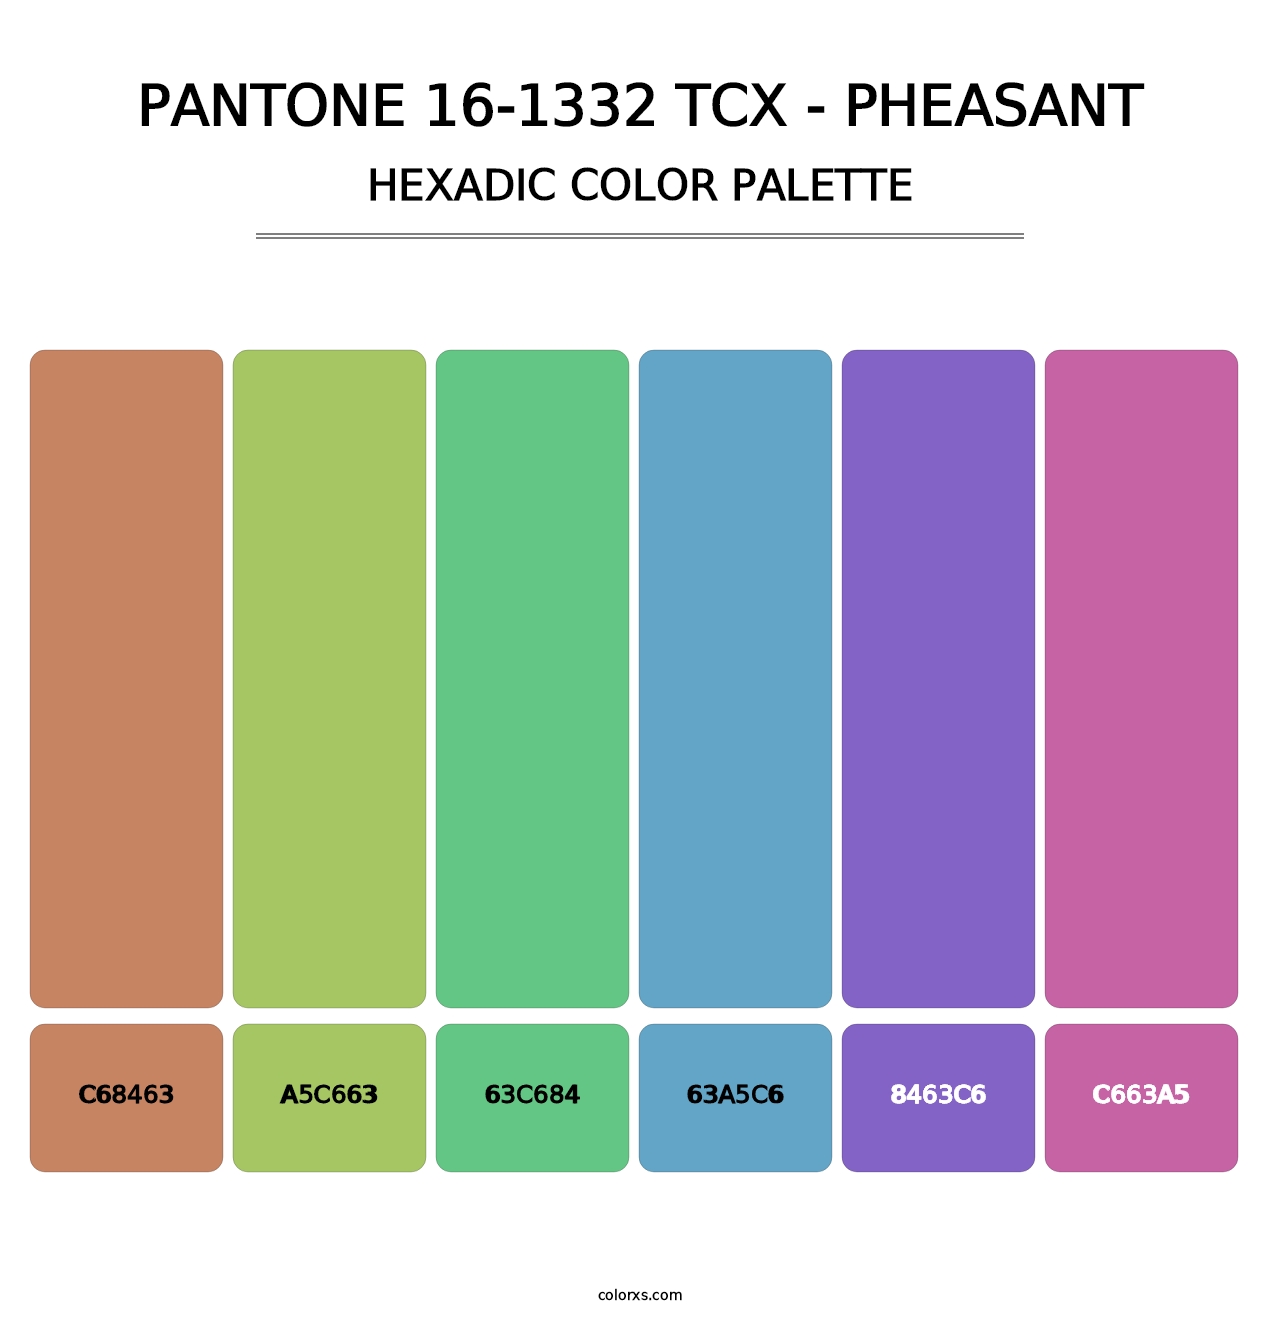 PANTONE 16-1332 TCX - Pheasant - Hexadic Color Palette